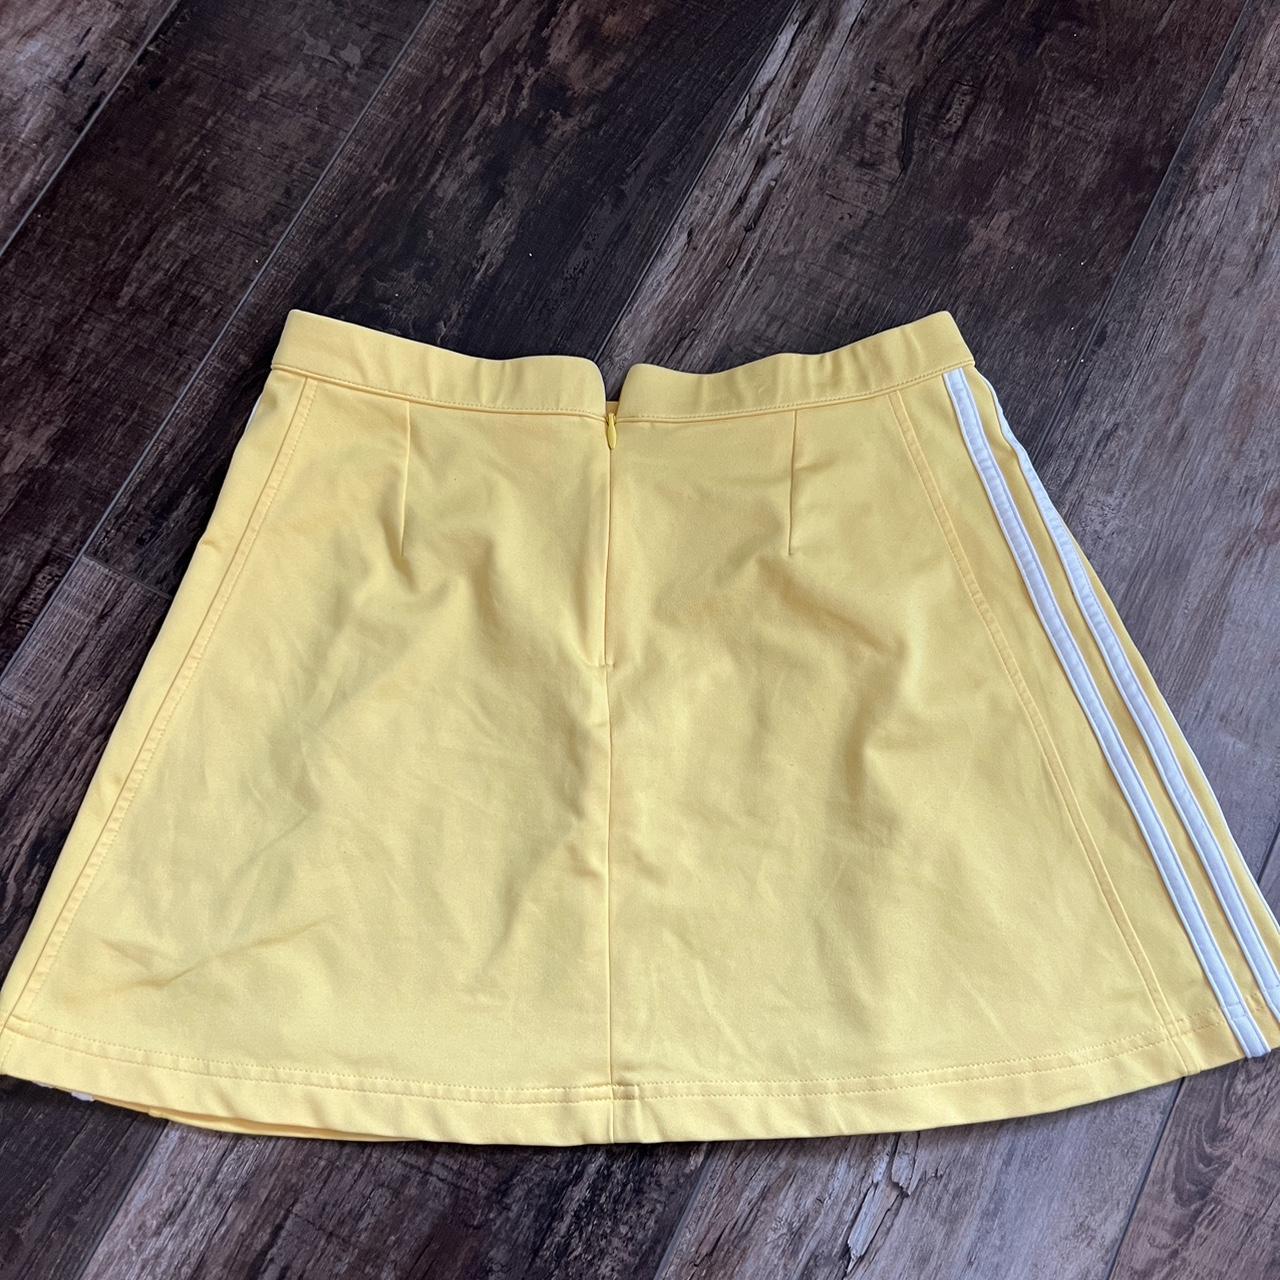 Adidas Women's Yellow Skirt (3)